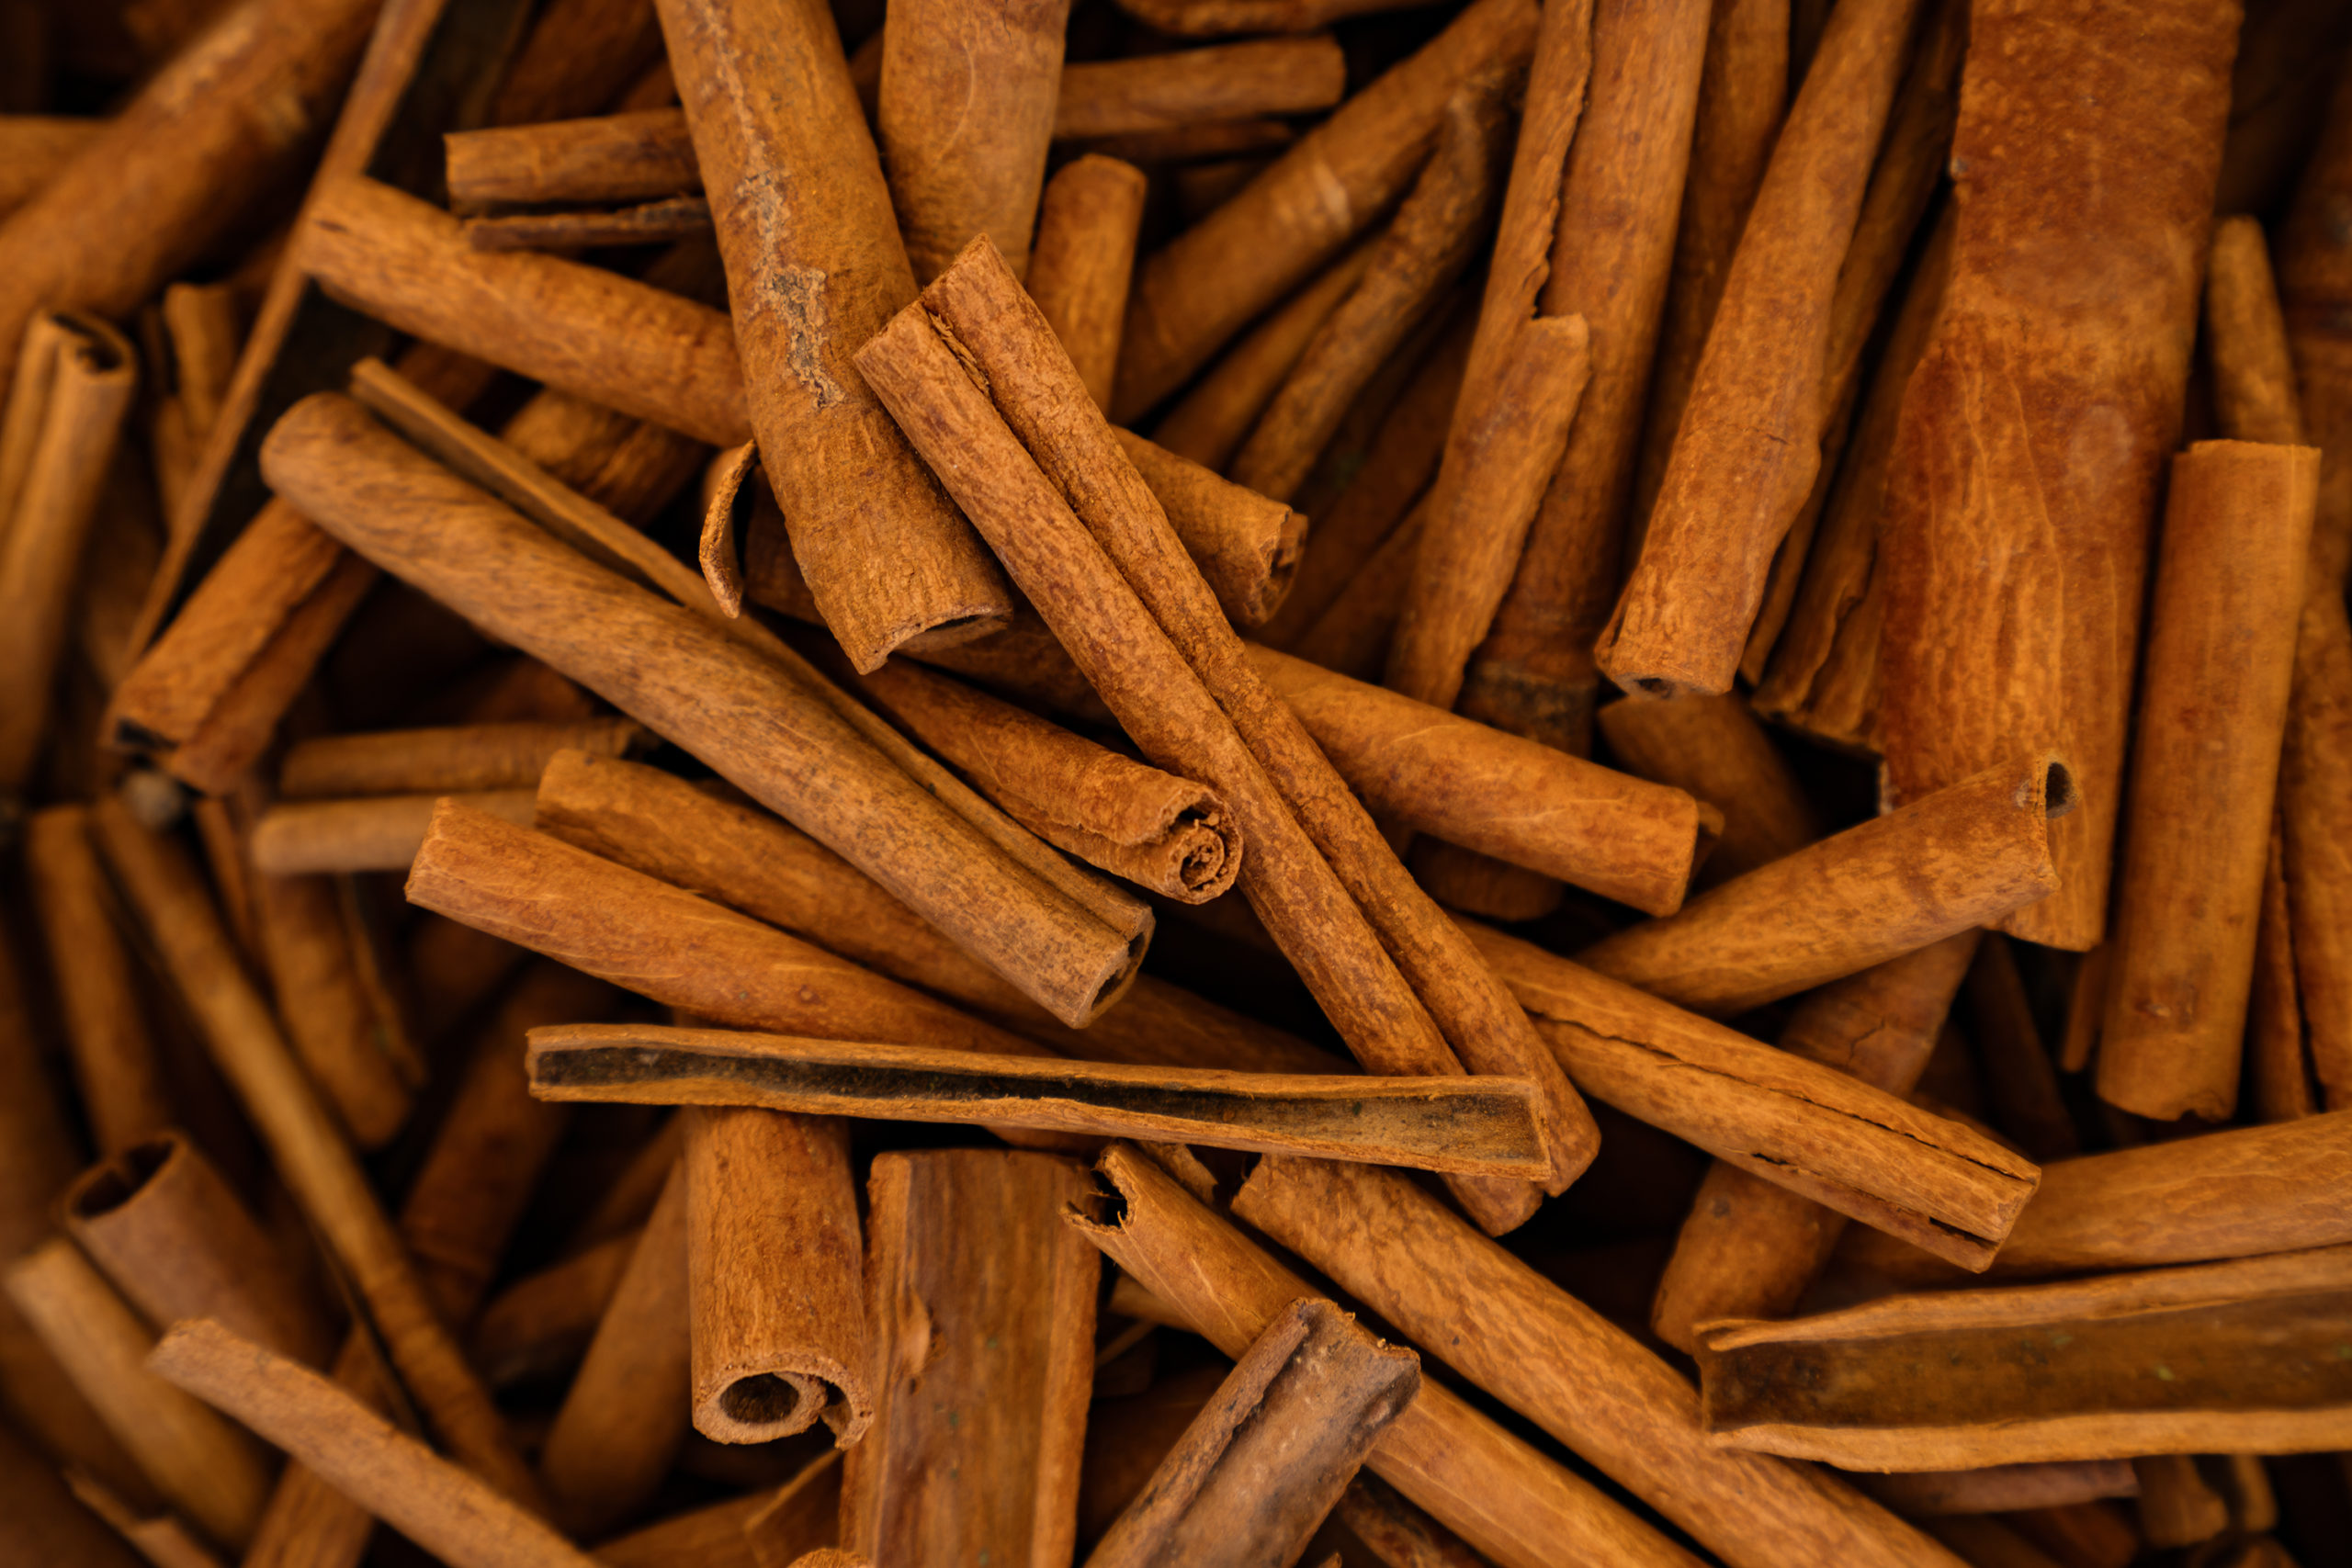 Substitute for Cinnamon Sticks